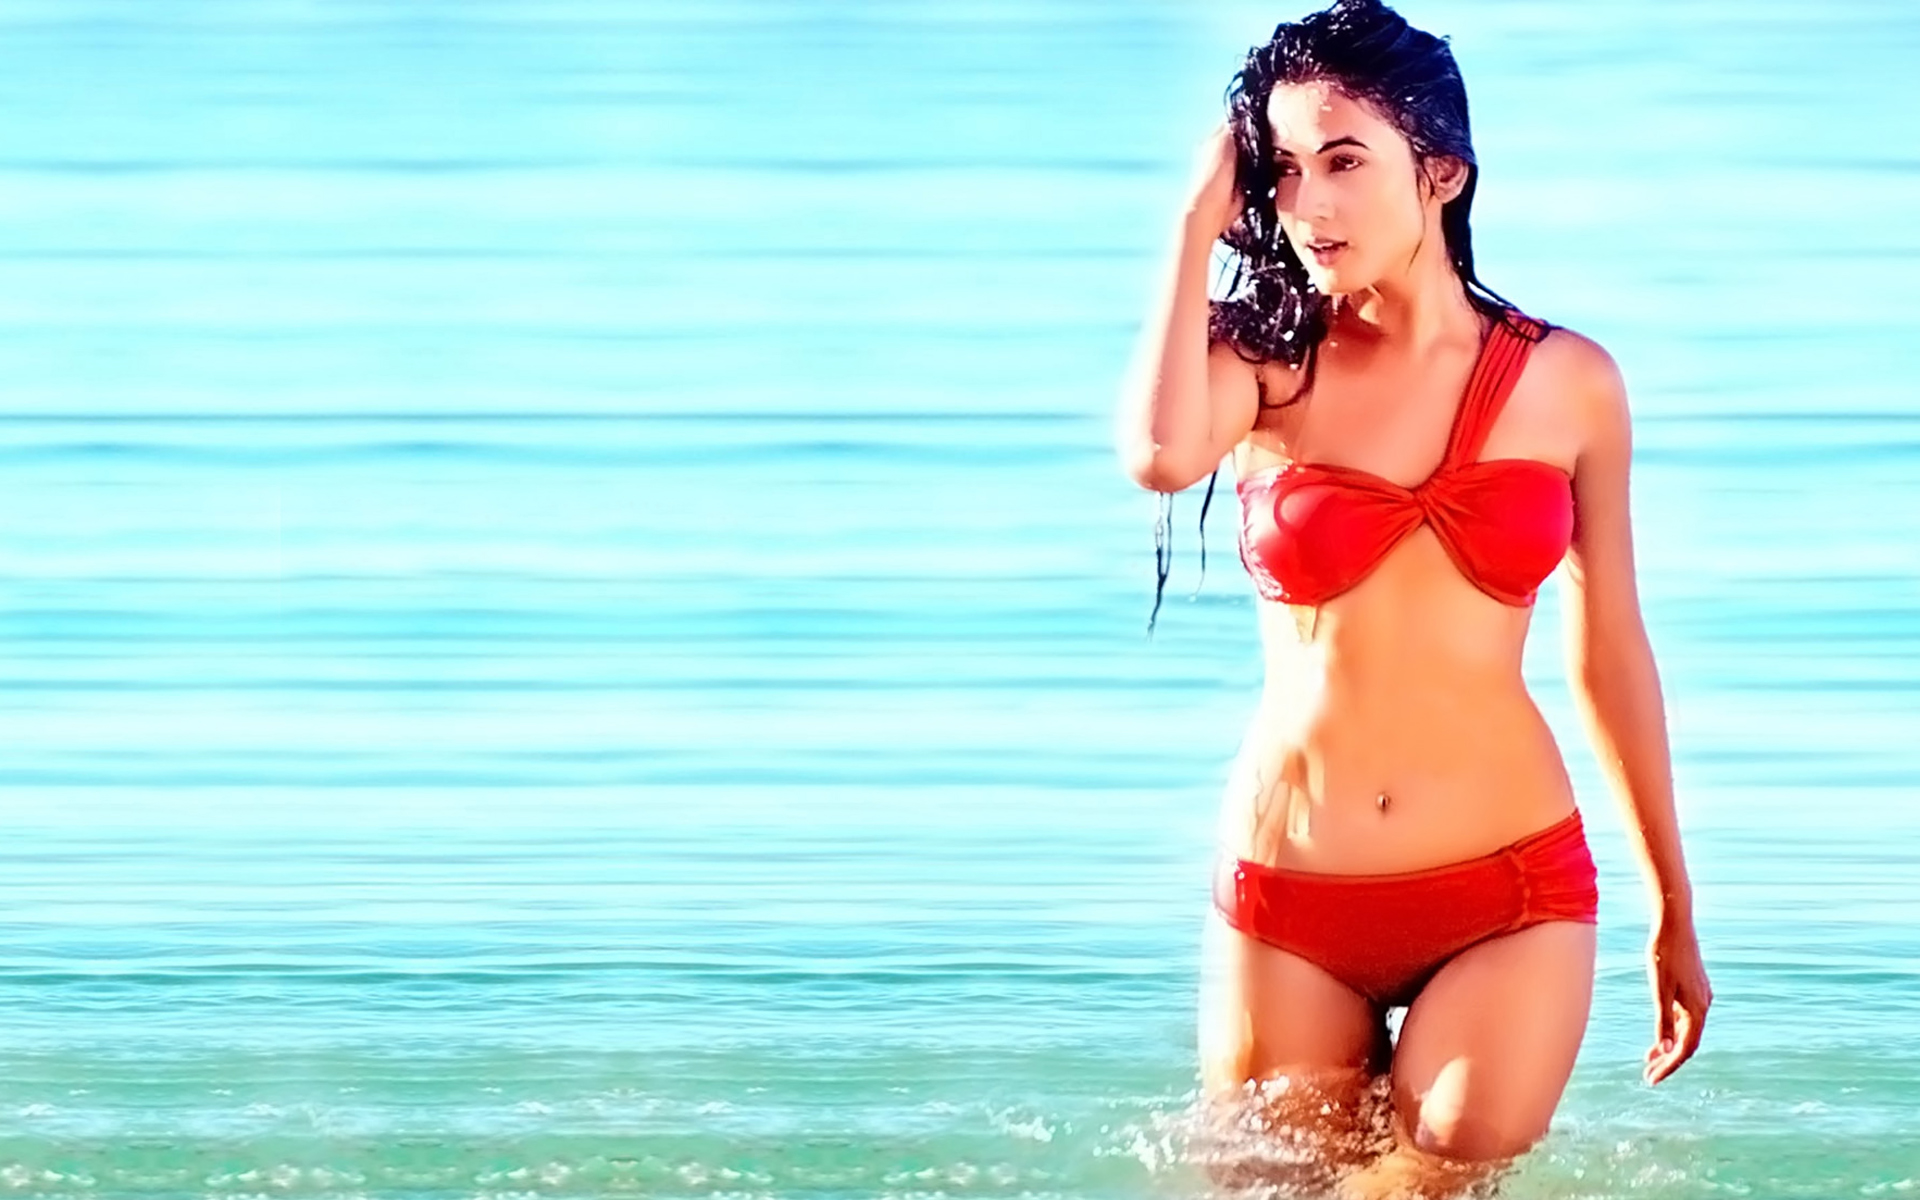 Sonal Chauhan in red bikini